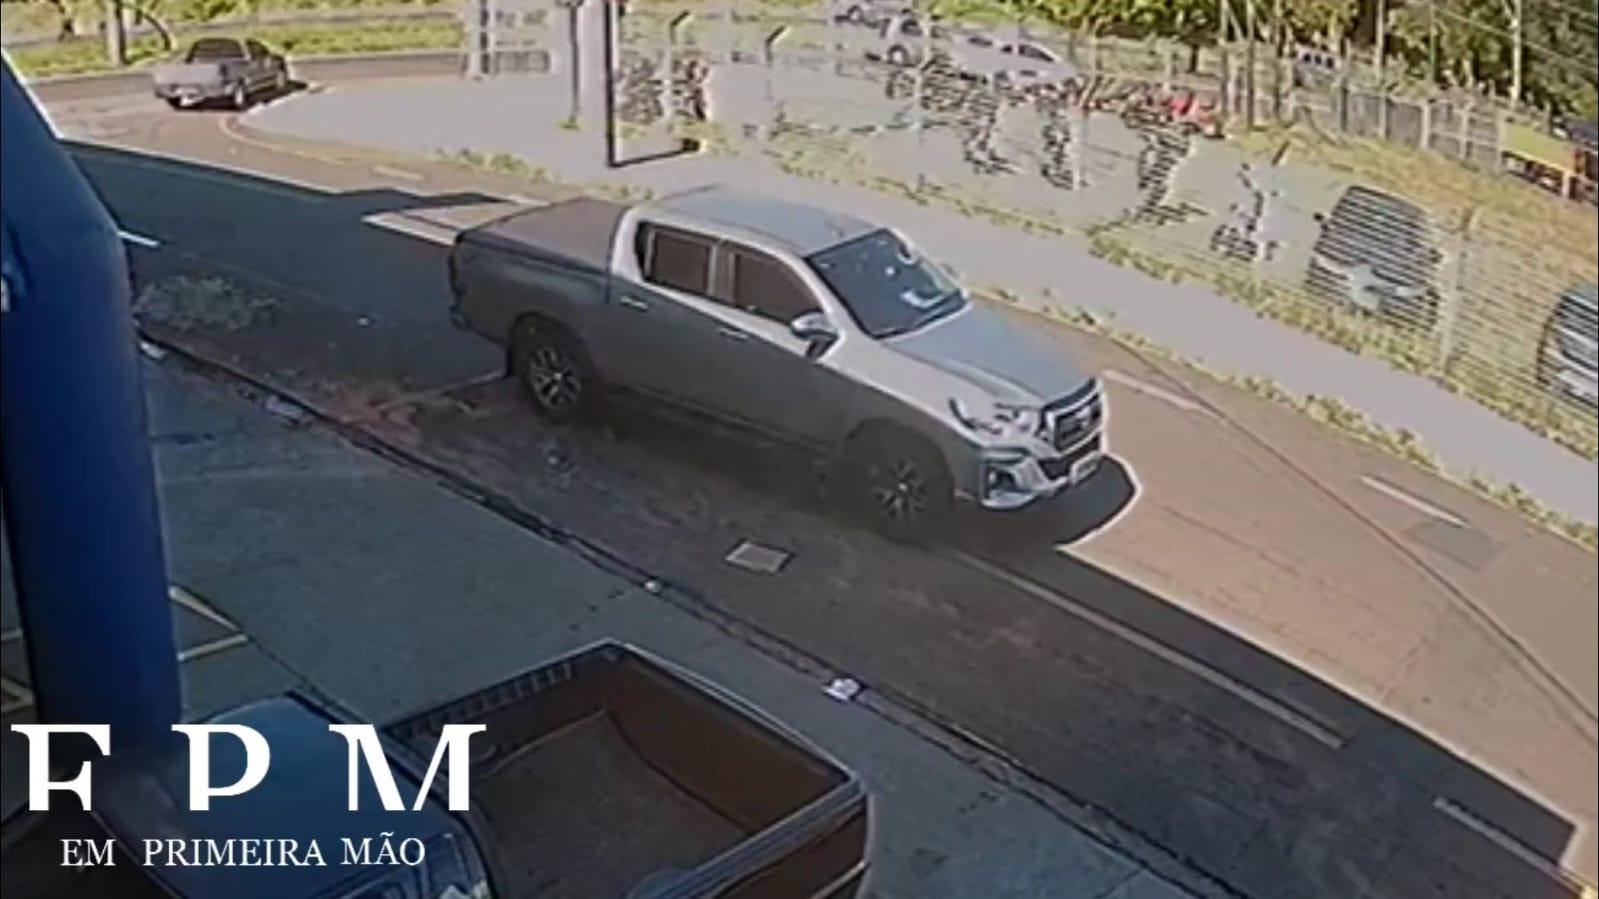 Câmera de segurança registra furto de caminhonete no bairro São Joaquim em Franca